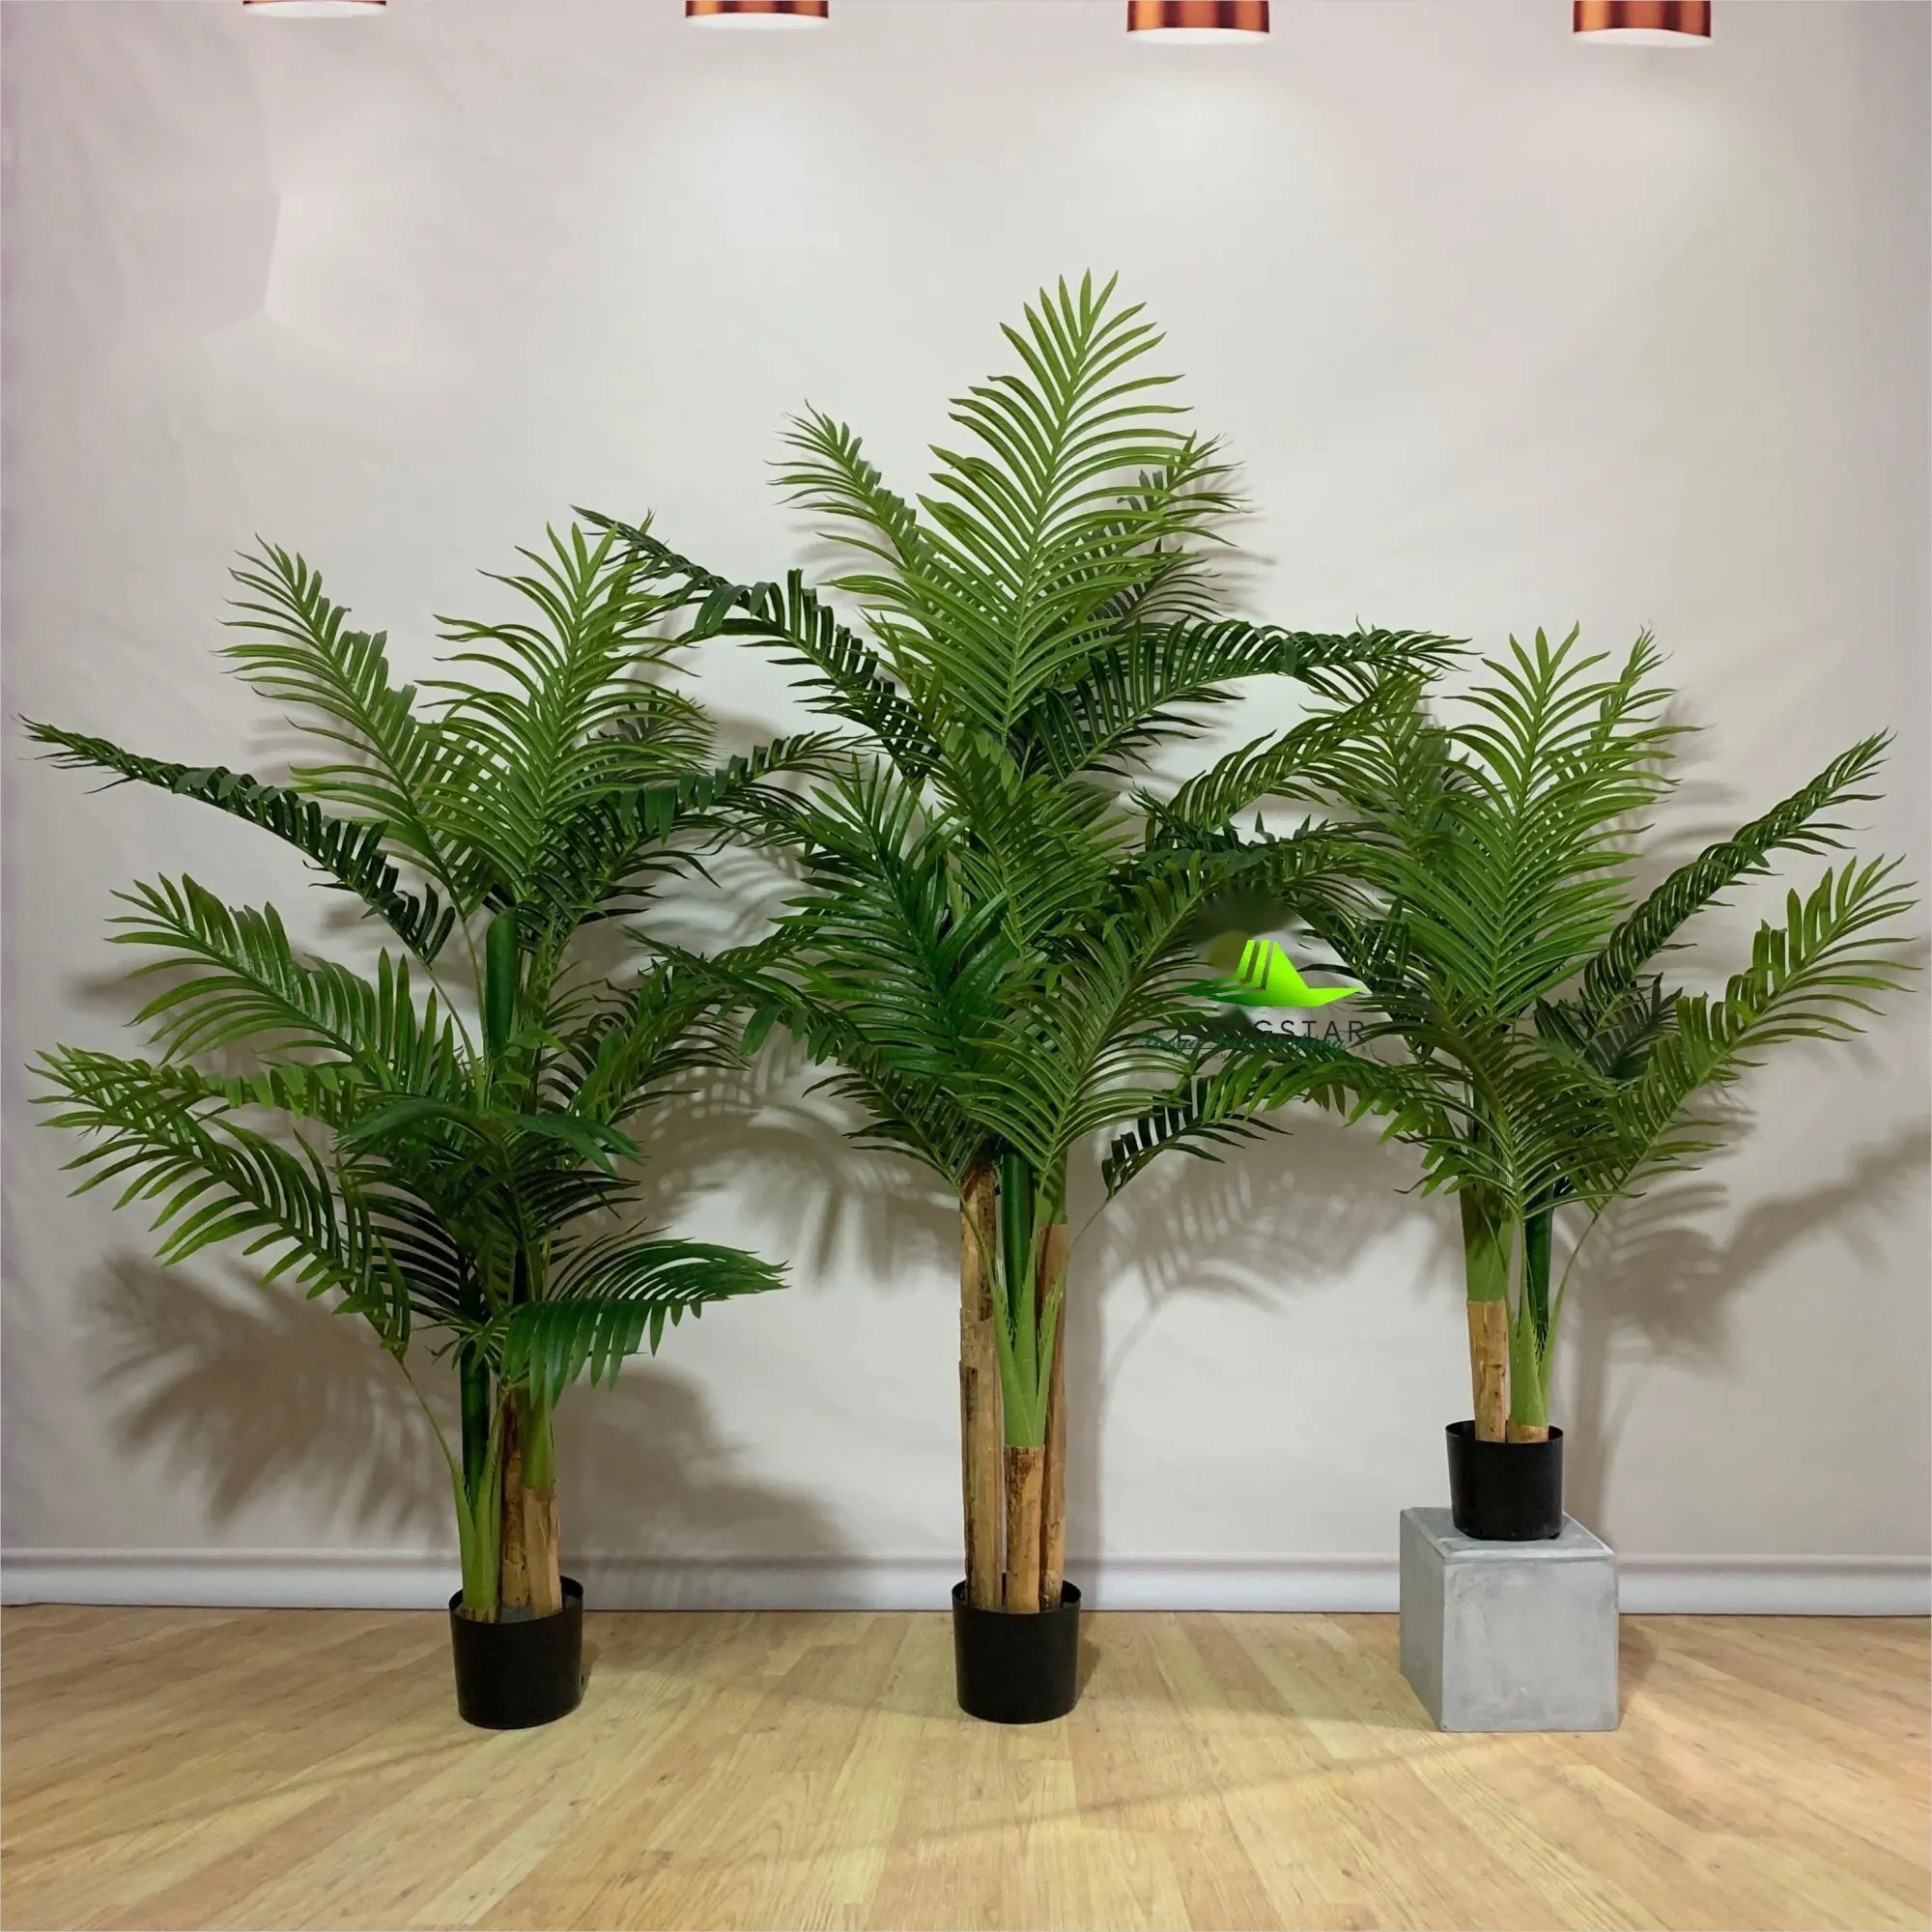 Palmier Areca artificiel 5 pieds de hauteur Plantes tropicales Feuilles et troncs de palmier réalistes